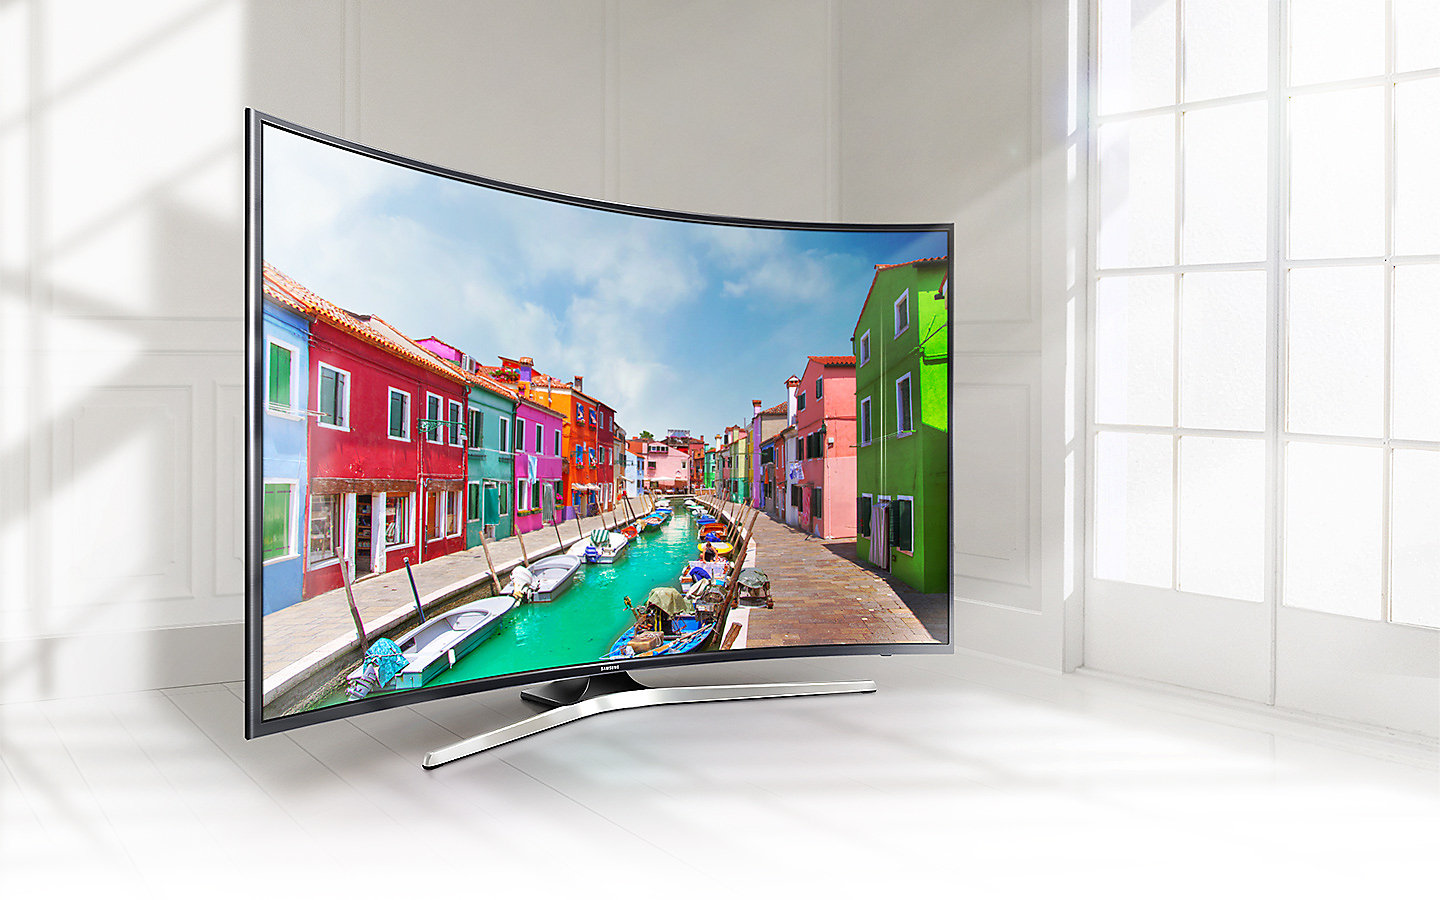 Купить телевизор в дзержинске. Samsung ue49mu6300u. Телевизор самсунг ue49 изогнутый. Samsung Curved UHD TV mu6500 49.